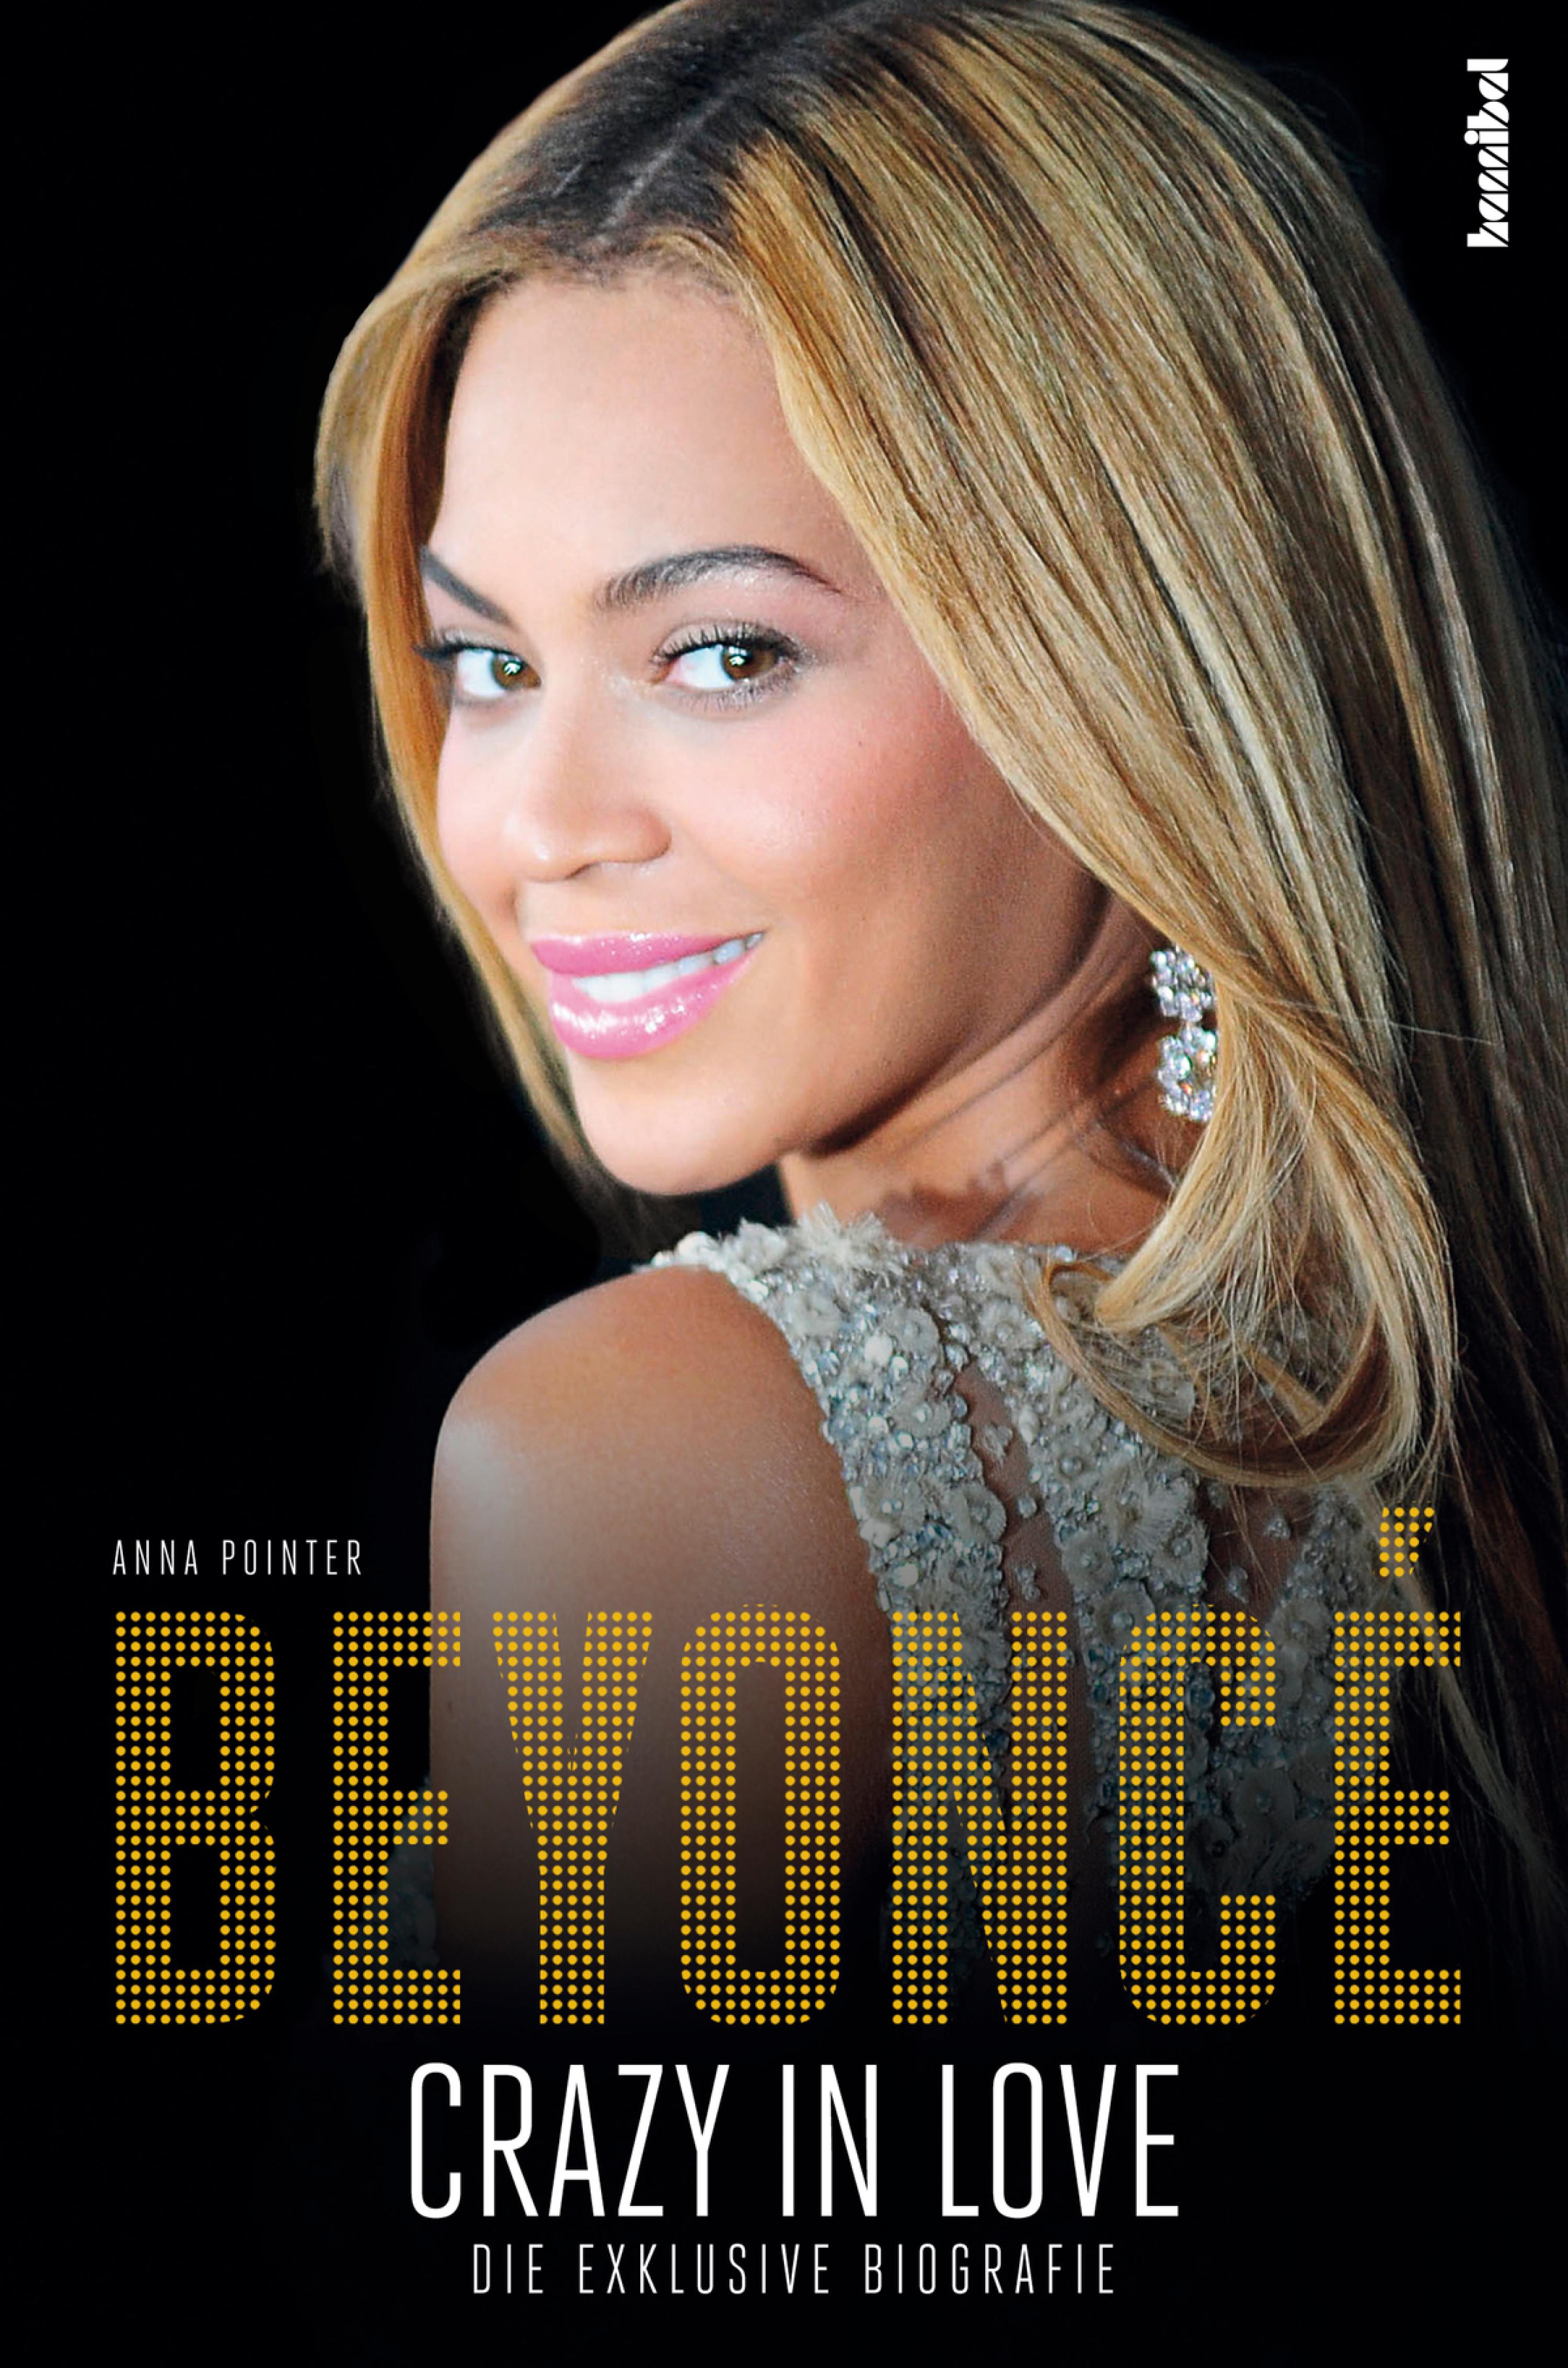 Beyoncé Crazy In Love Die Exklusive Biografie Ebook Kostenlos Online Lesen Oder Downloaden 